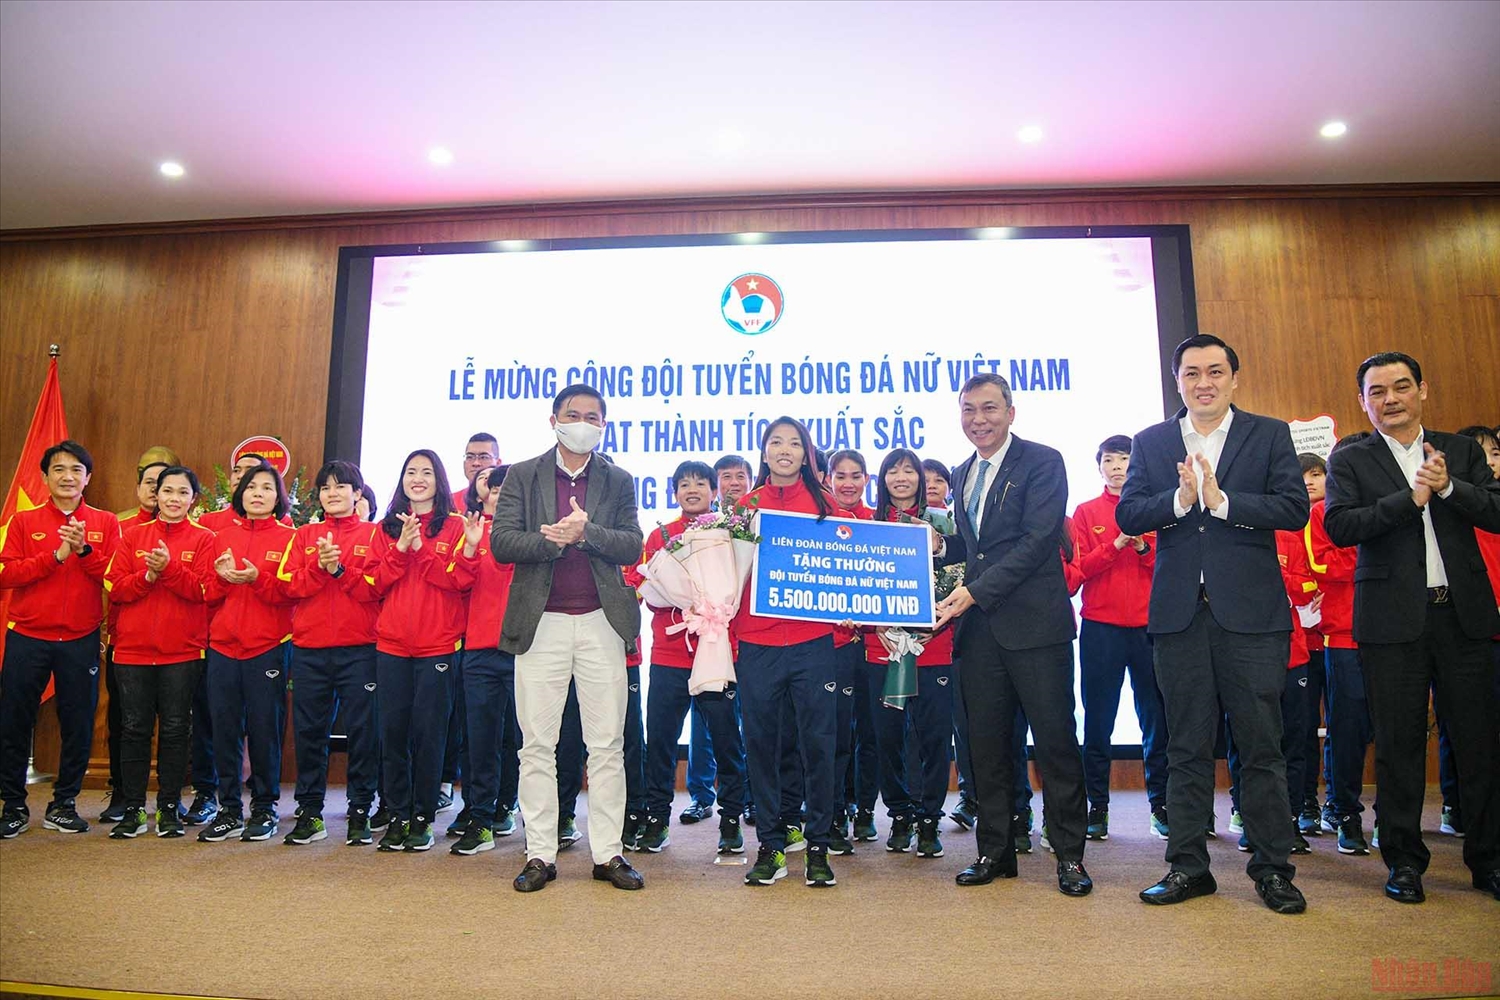 Đội trưởng Huỳnh Như thay mặt toàn đội nhận phần thưởng 5,5 tỷ đồng của Liên đoàn Bóng đá Việt Nam. (Ảnh: THÀNH ĐẠT)